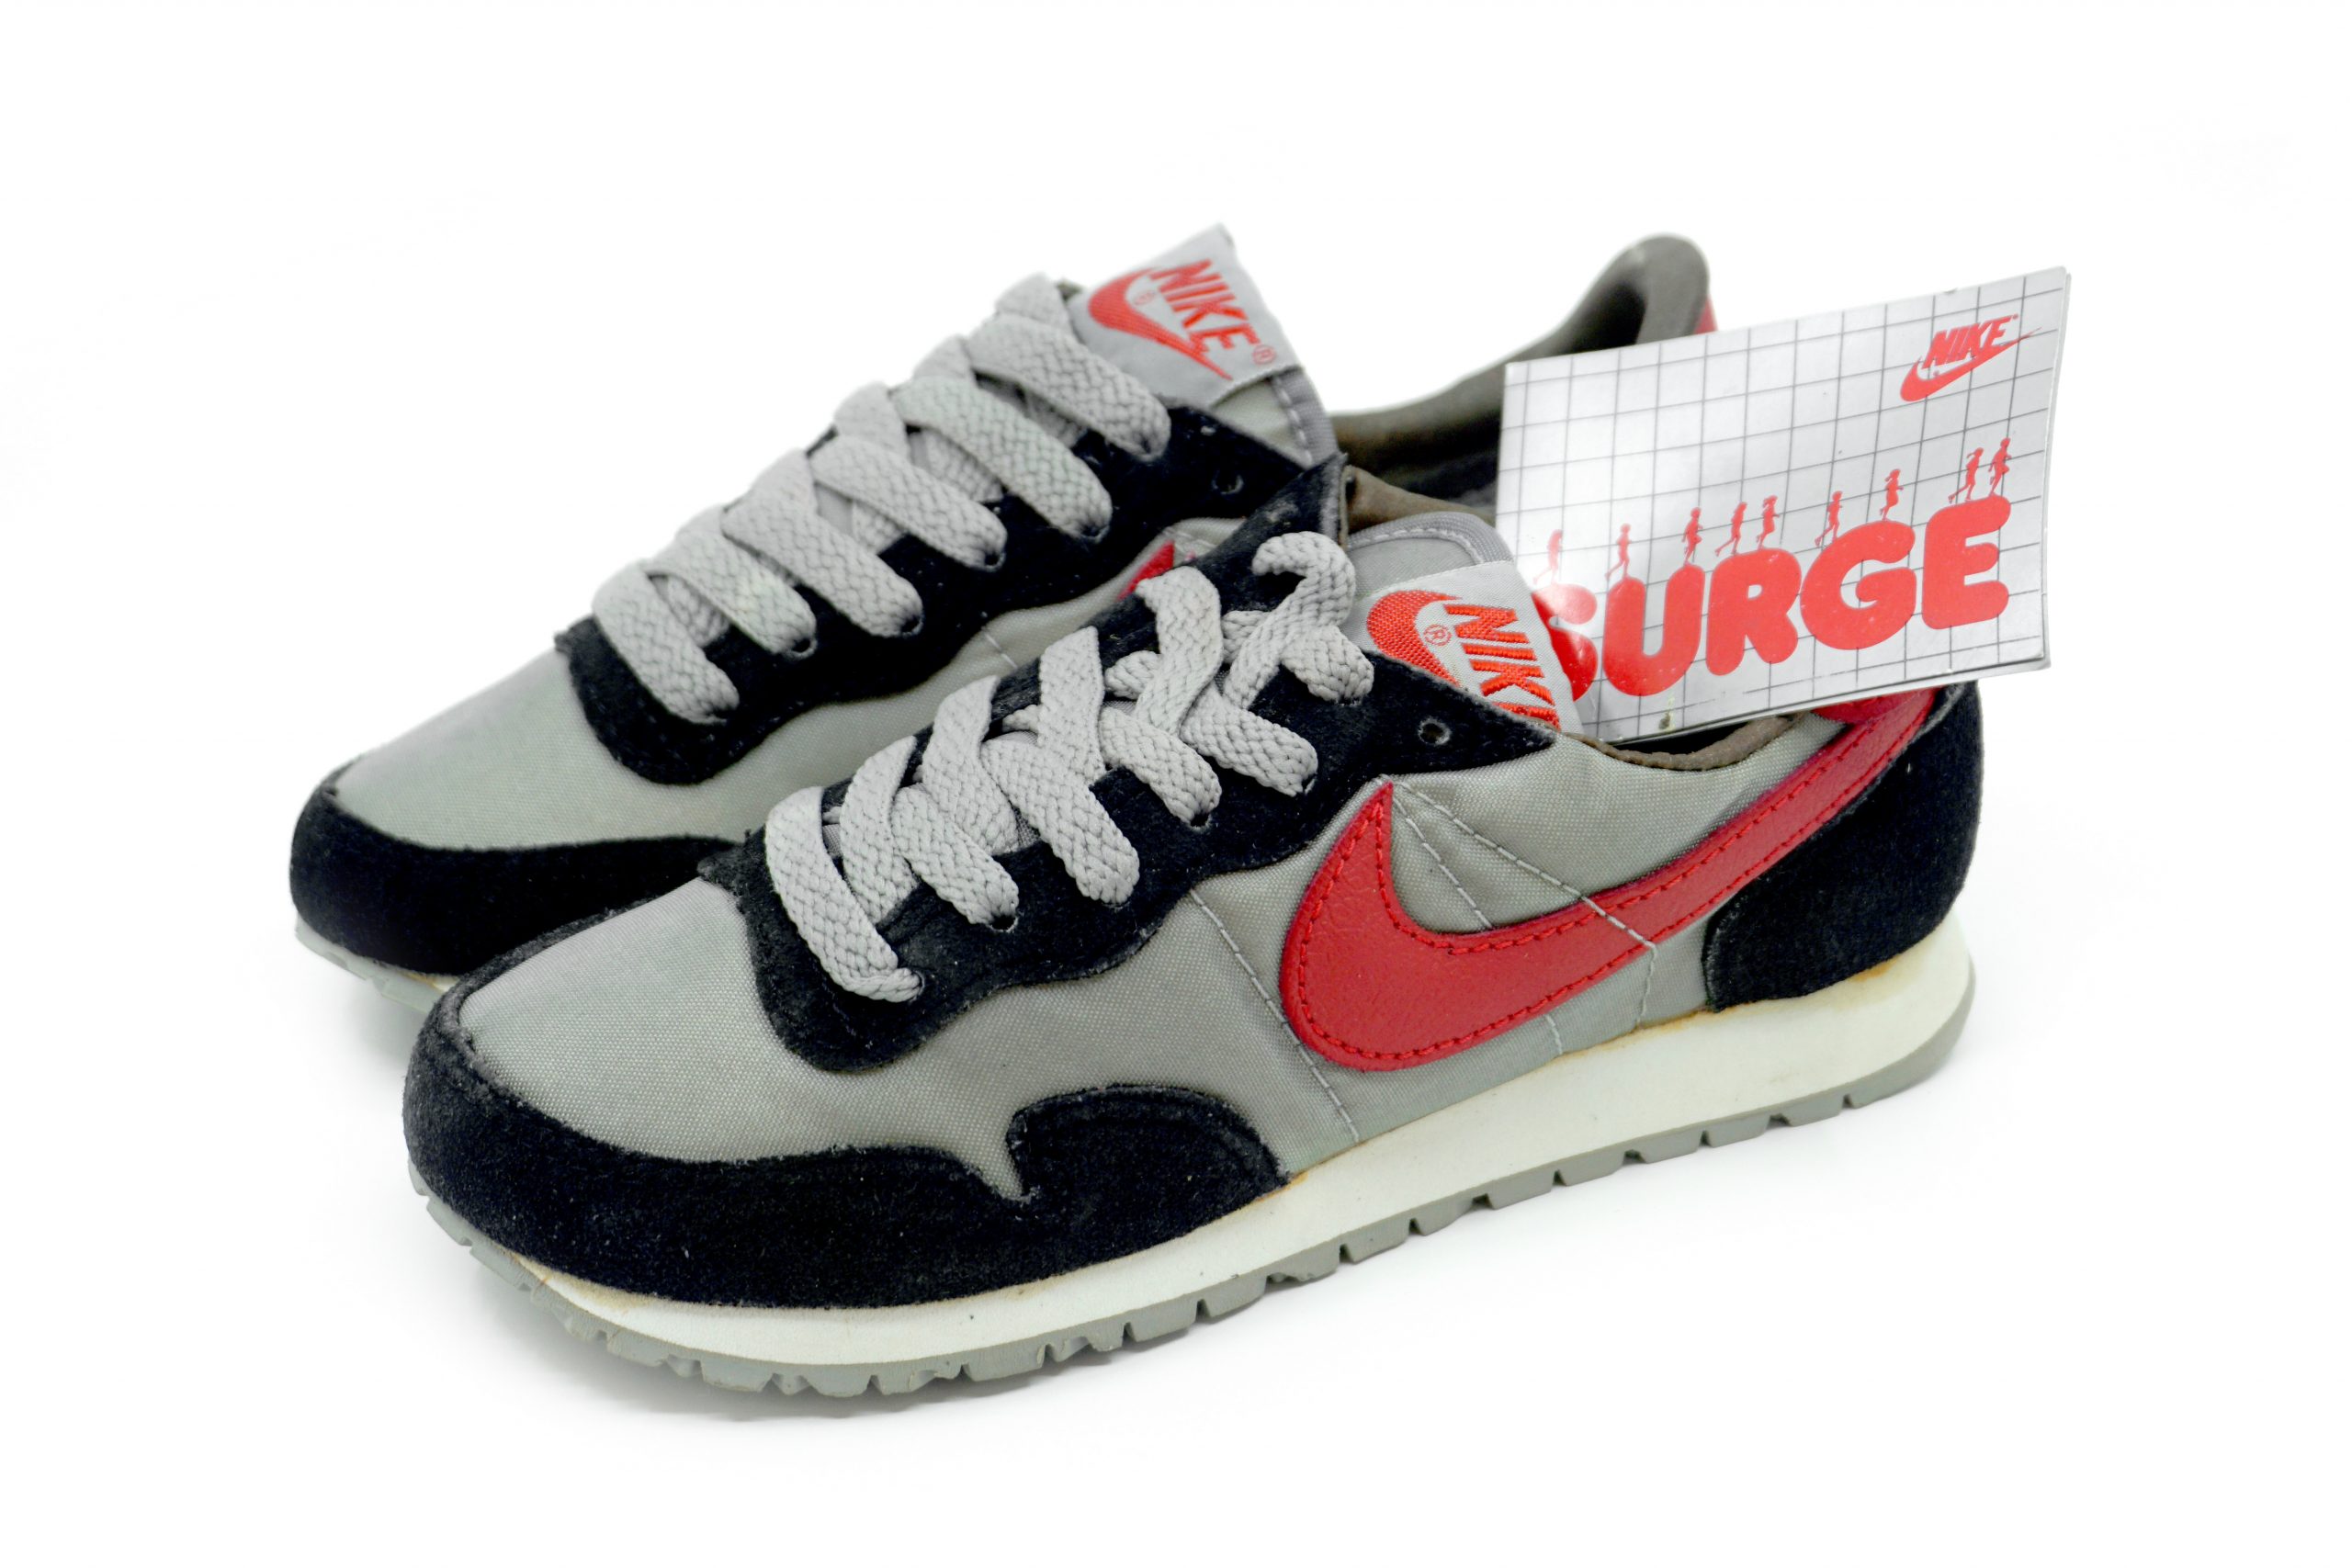 Llamarada Buque de guerra Persona a cargo Vintage 1983 Nike Surge - Shoes Your Vintage